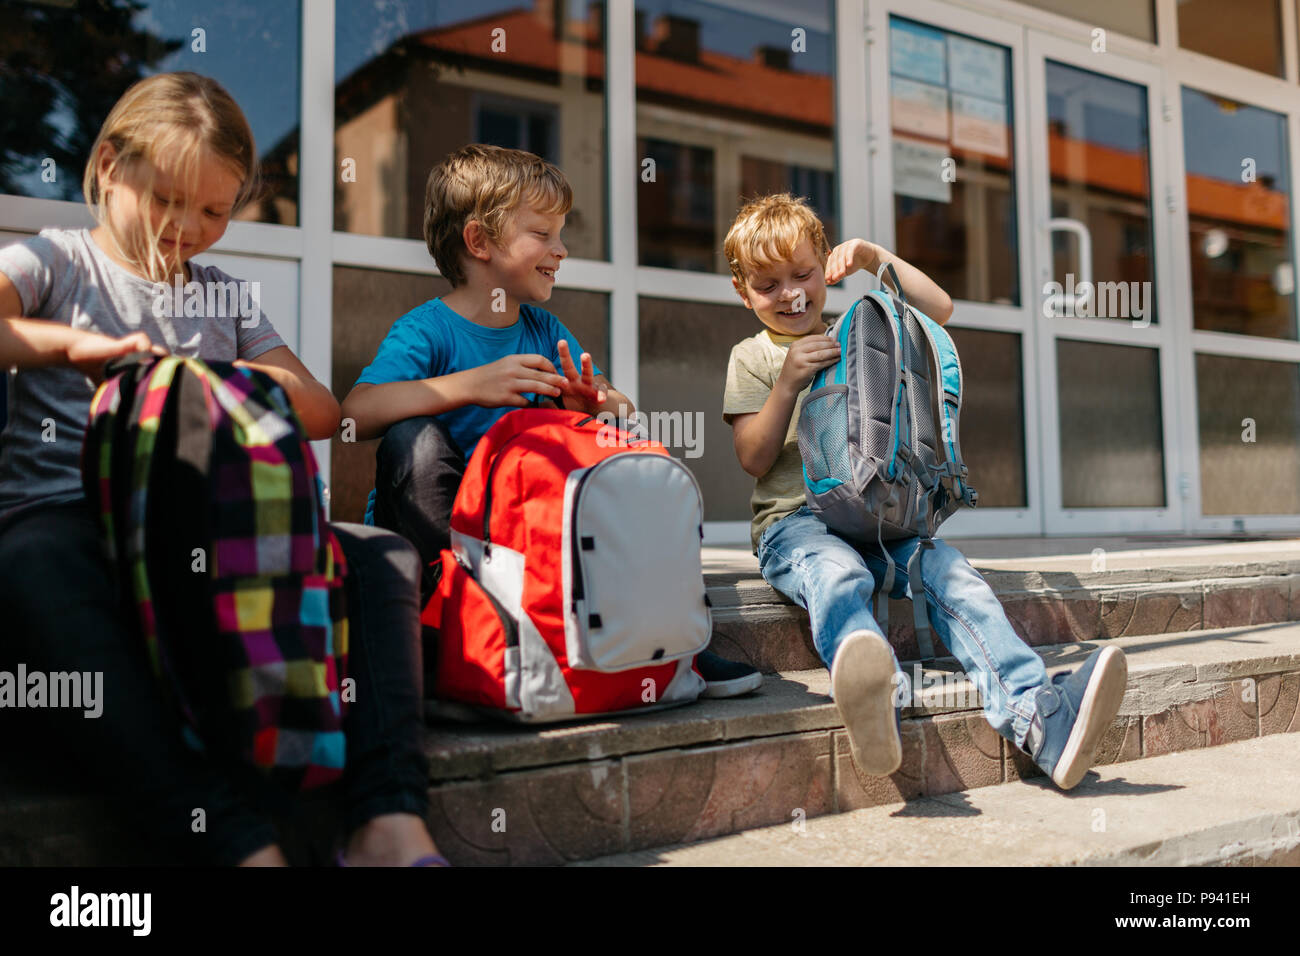 Les enfants de l'école de bonne humeur au cours d'une pause. Enfants souriants avec des cartables assis sur des escaliers à l'extérieur de l'école. Banque D'Images